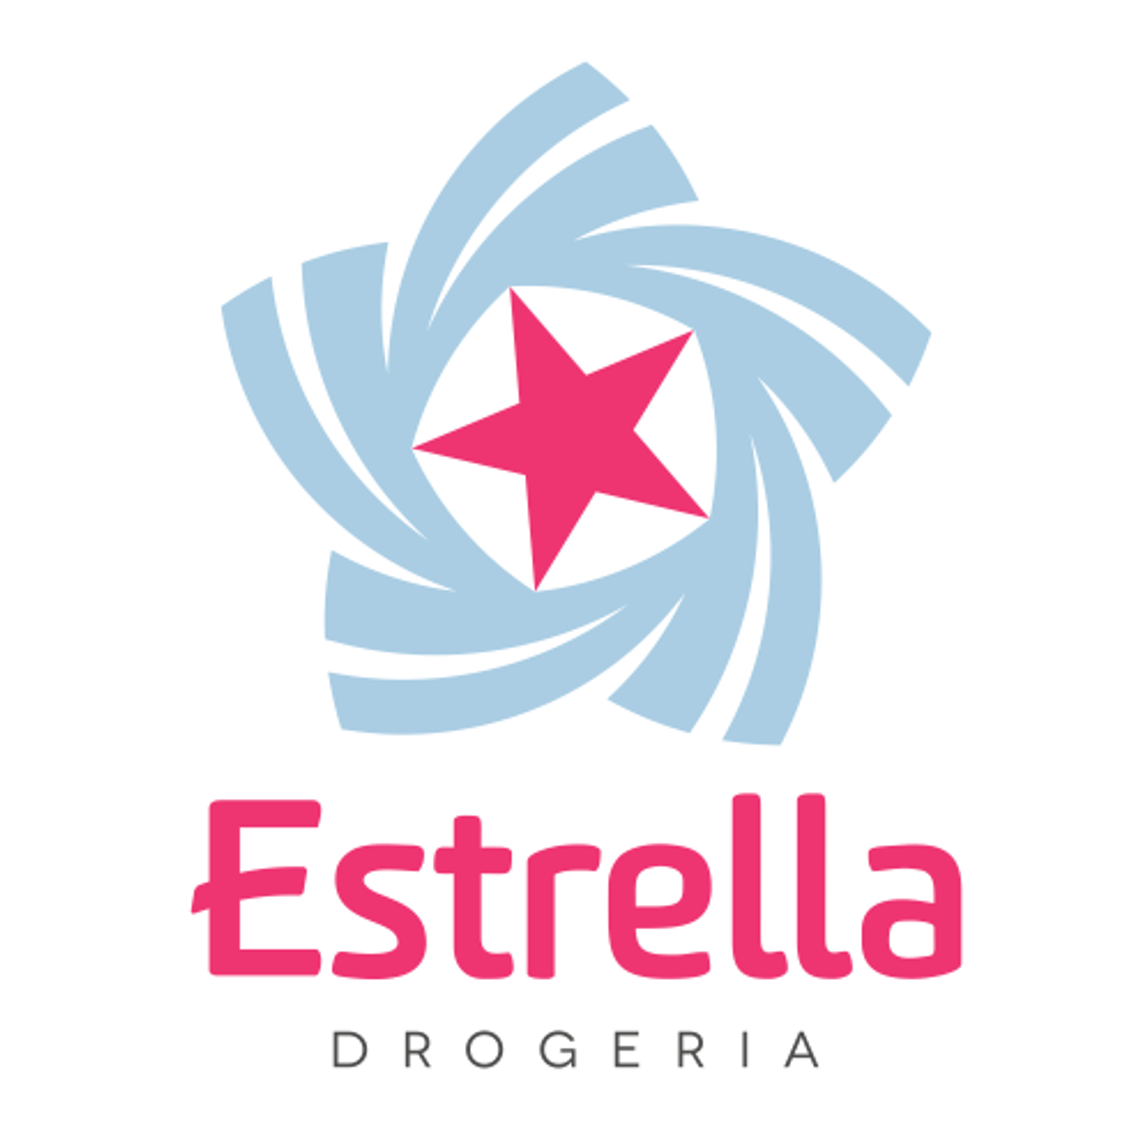 DrogeriaEstrella.pl